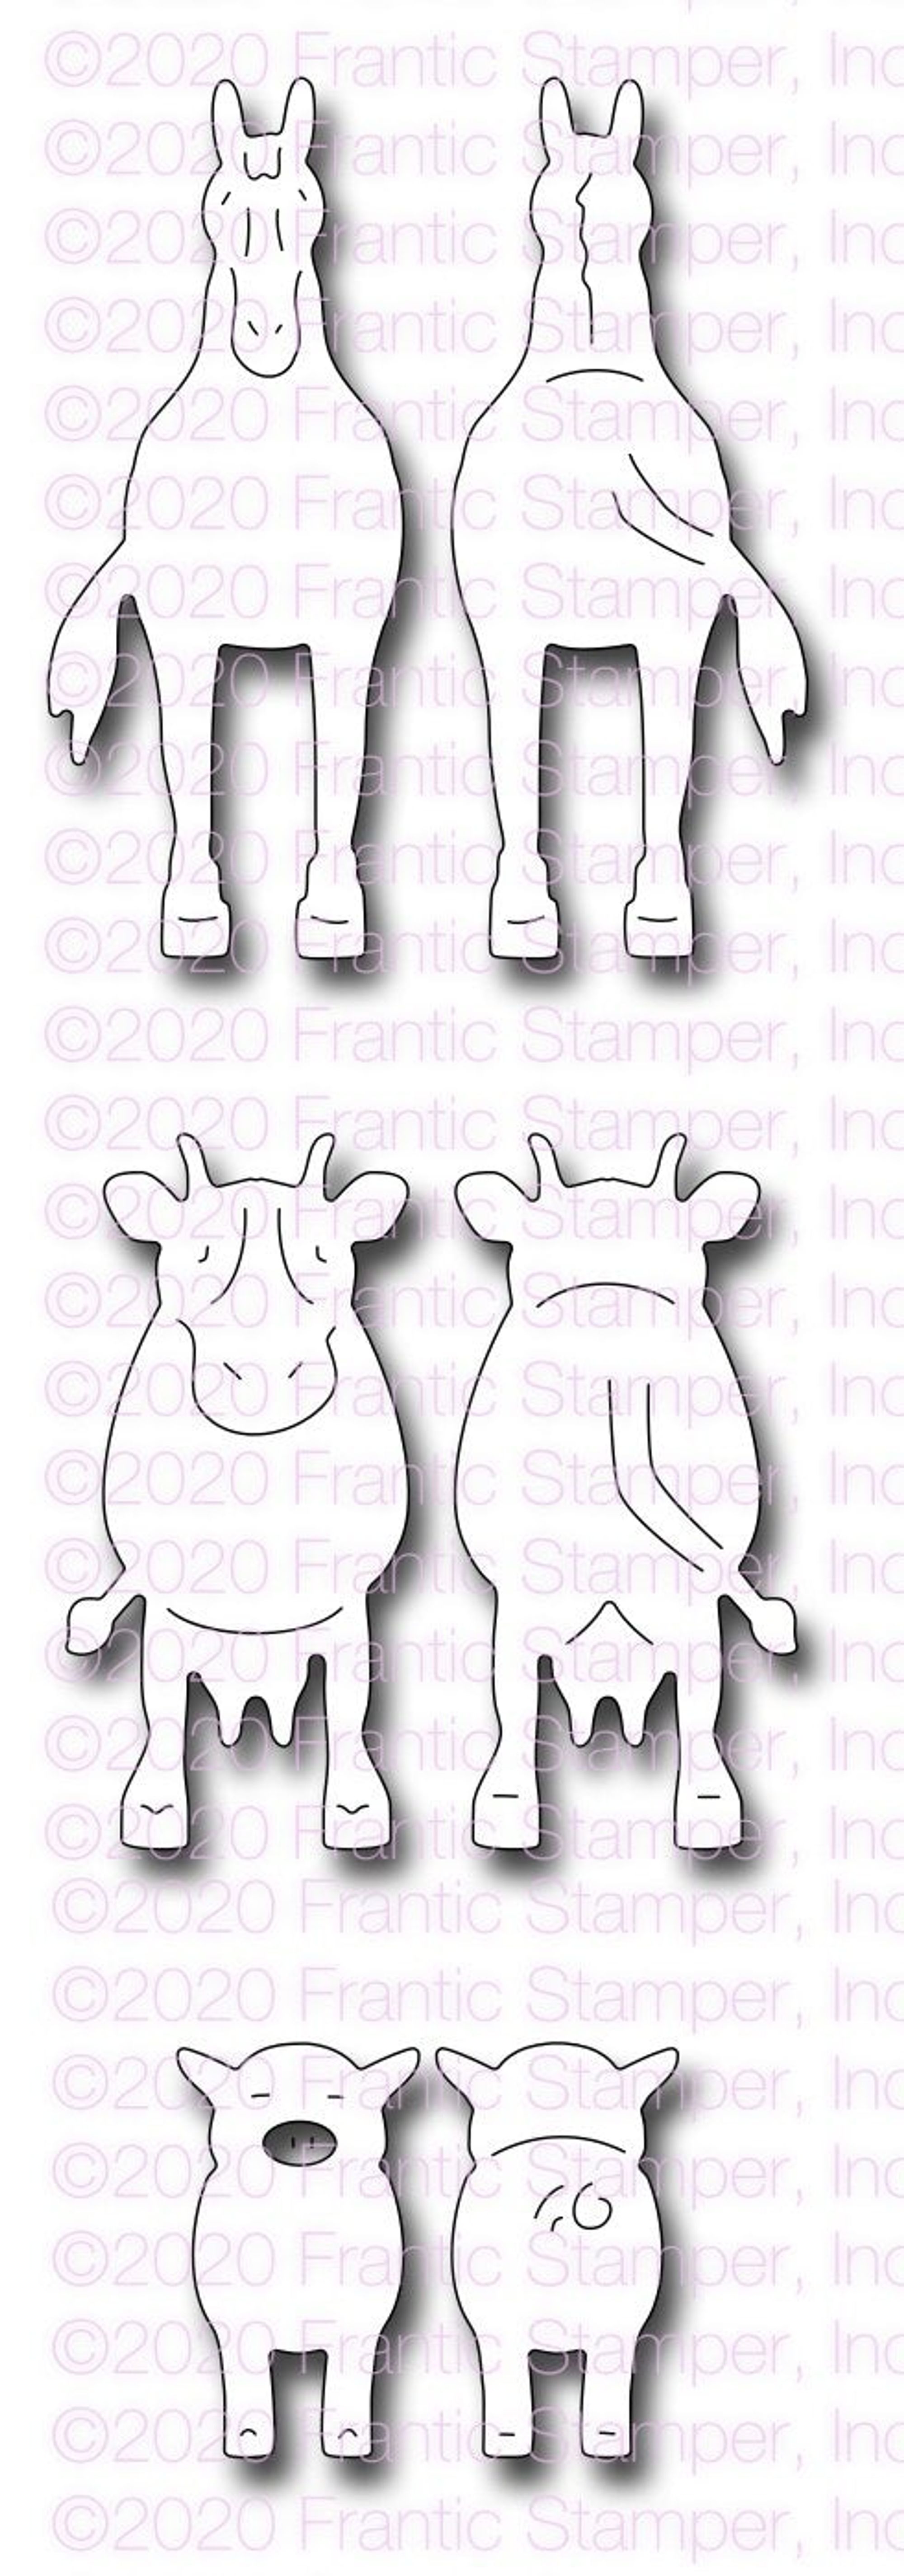 Frantic Stamper Front & Back Farm Animals die set